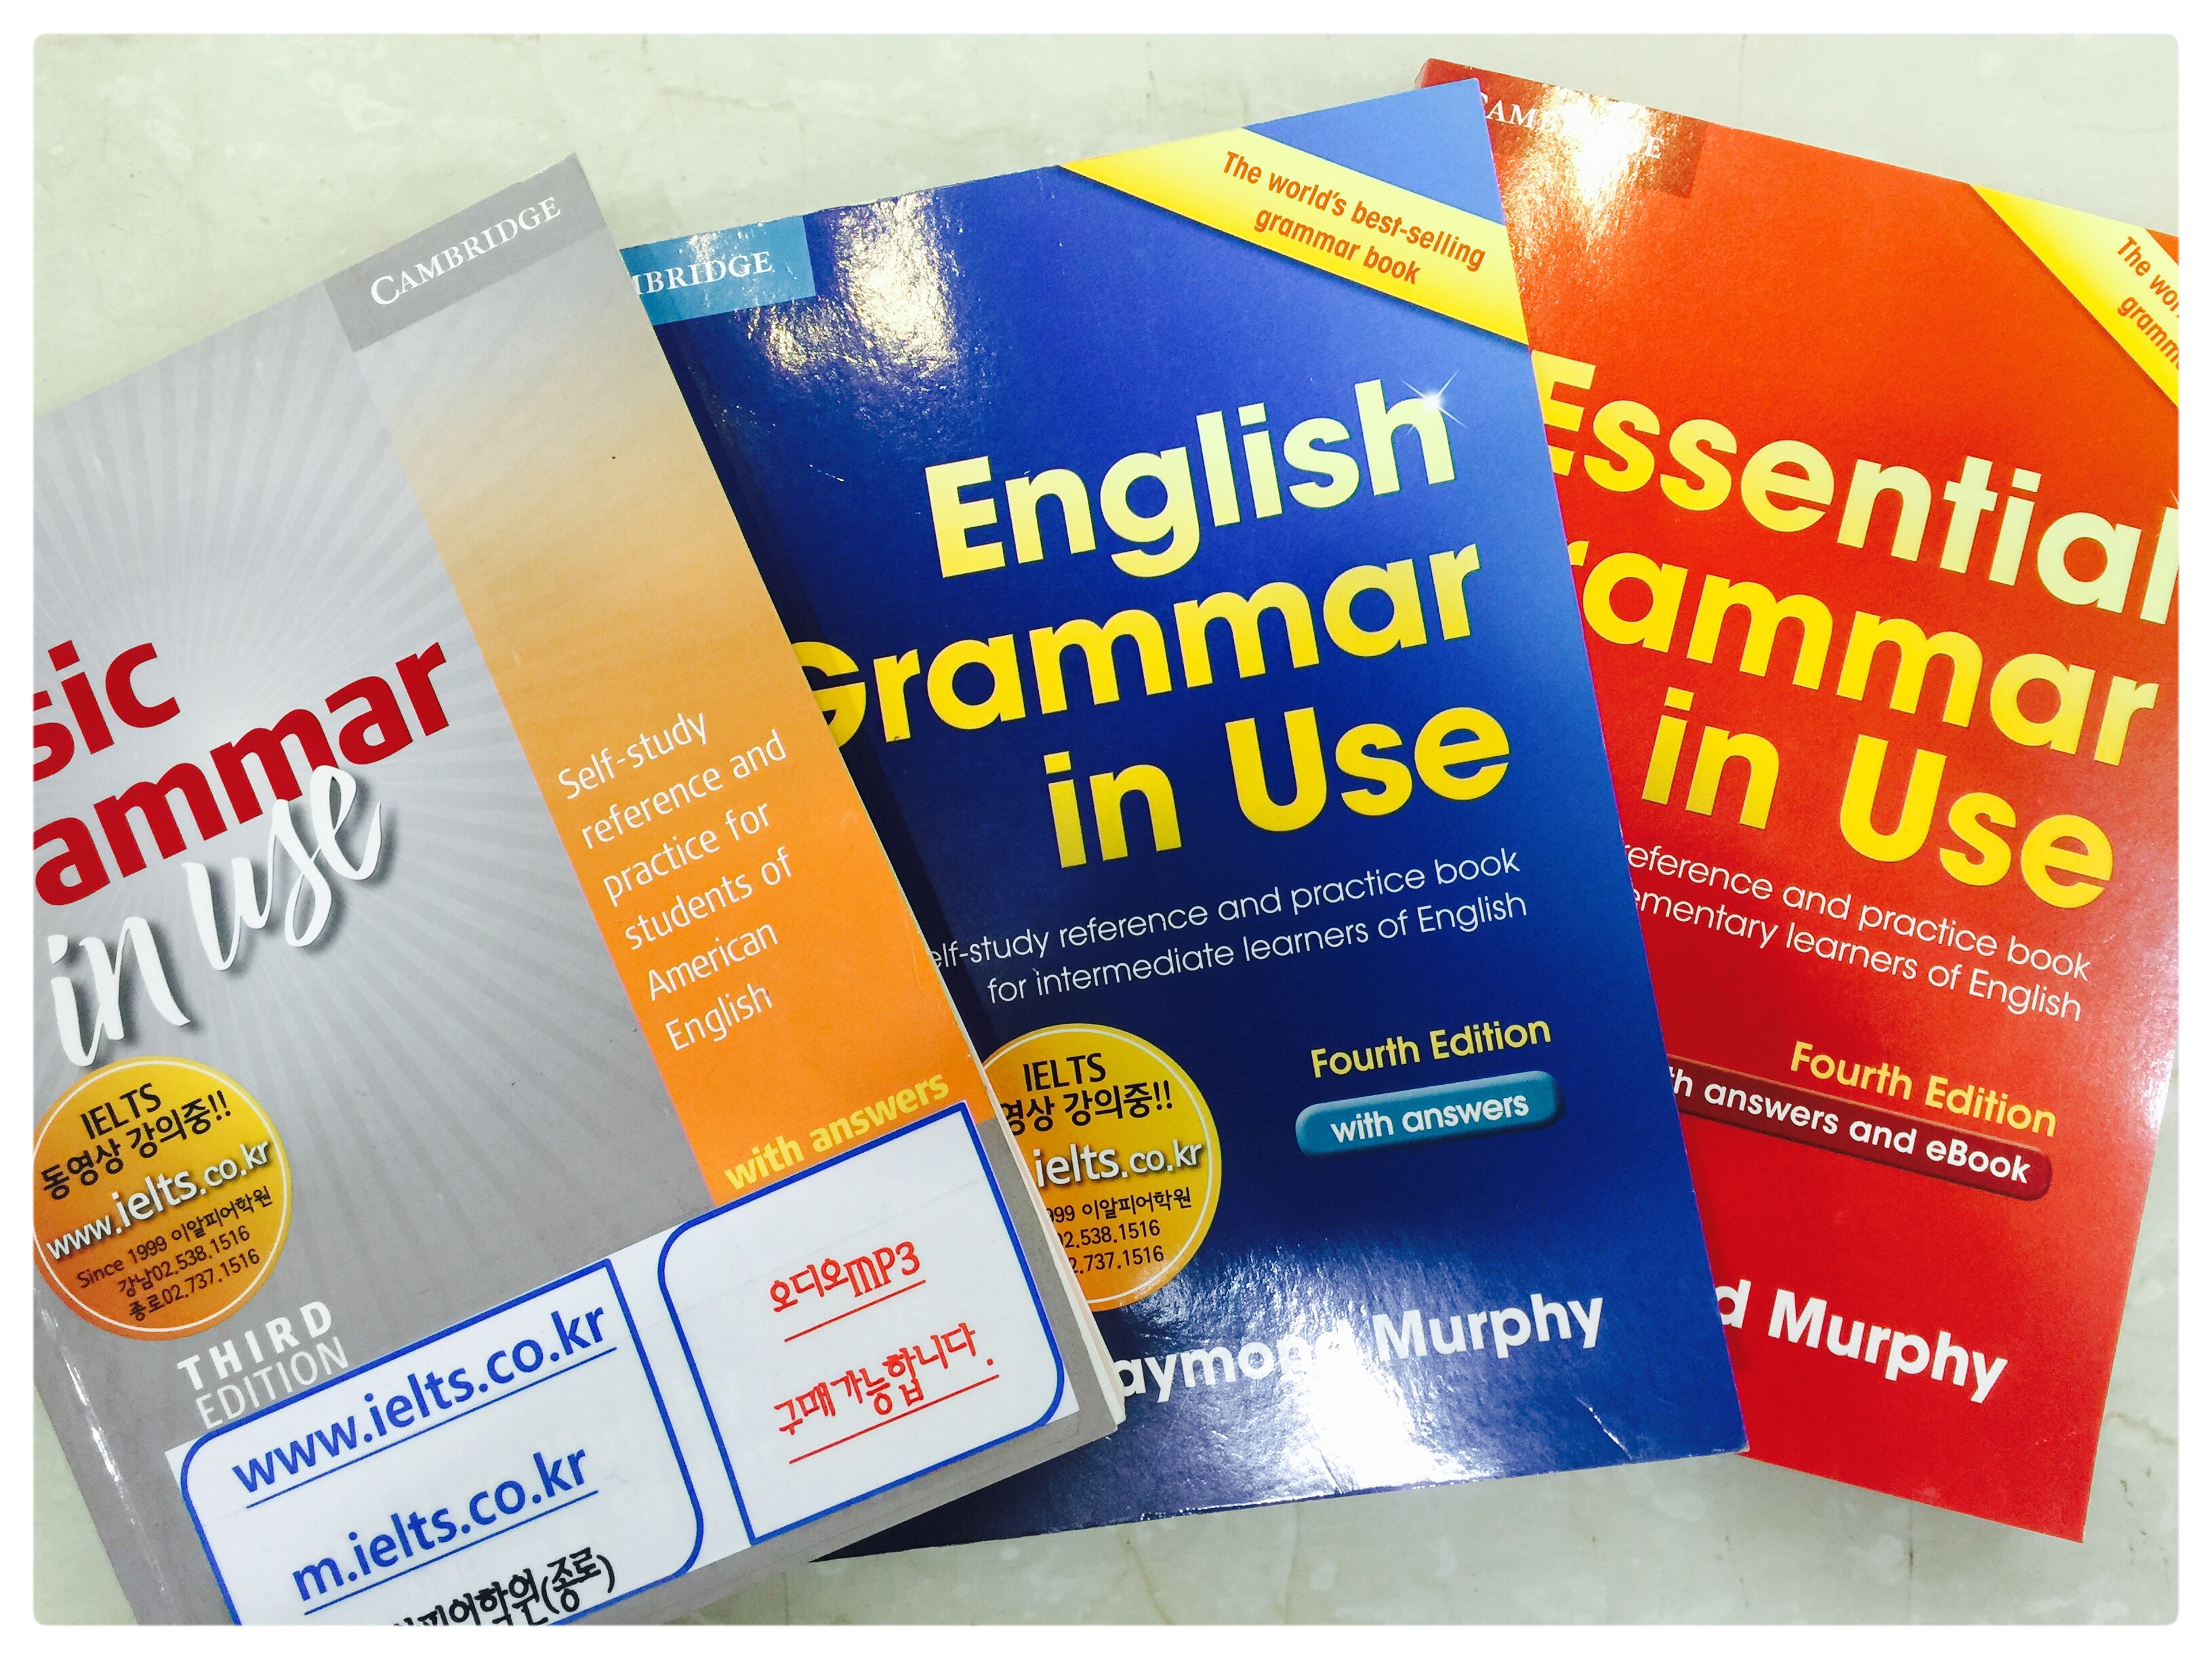 Basic, English, Essential grammar in Use